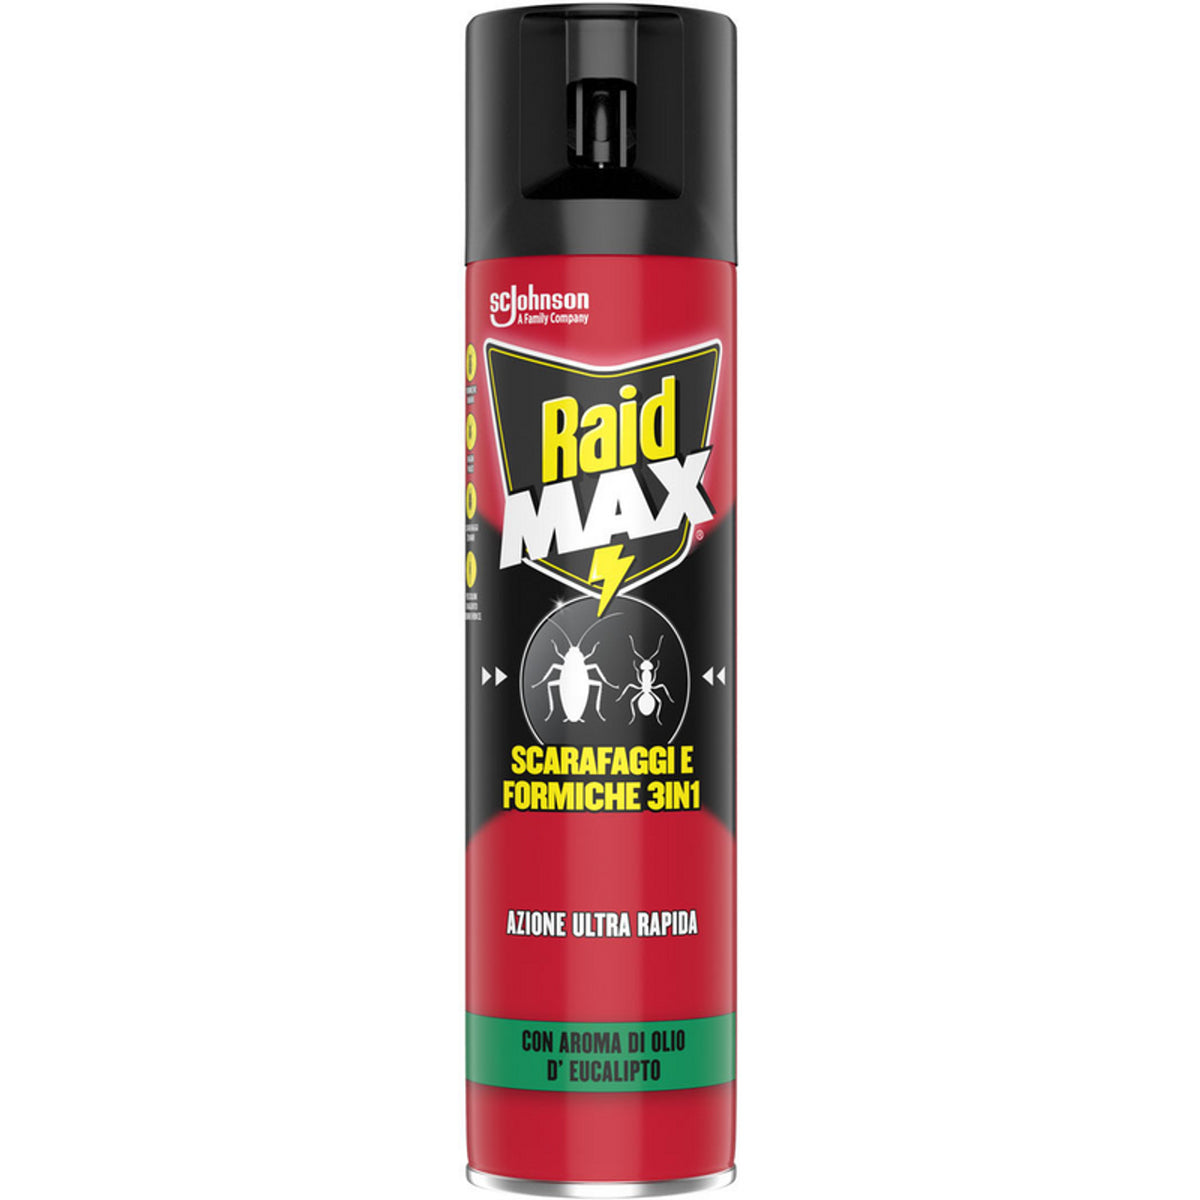 RAID MAX INSECTICIDE SPRAY COCKRACHES OCH Myror 3in1 Ultra Rapid Action med arom av eukalyptusolja 400 ml